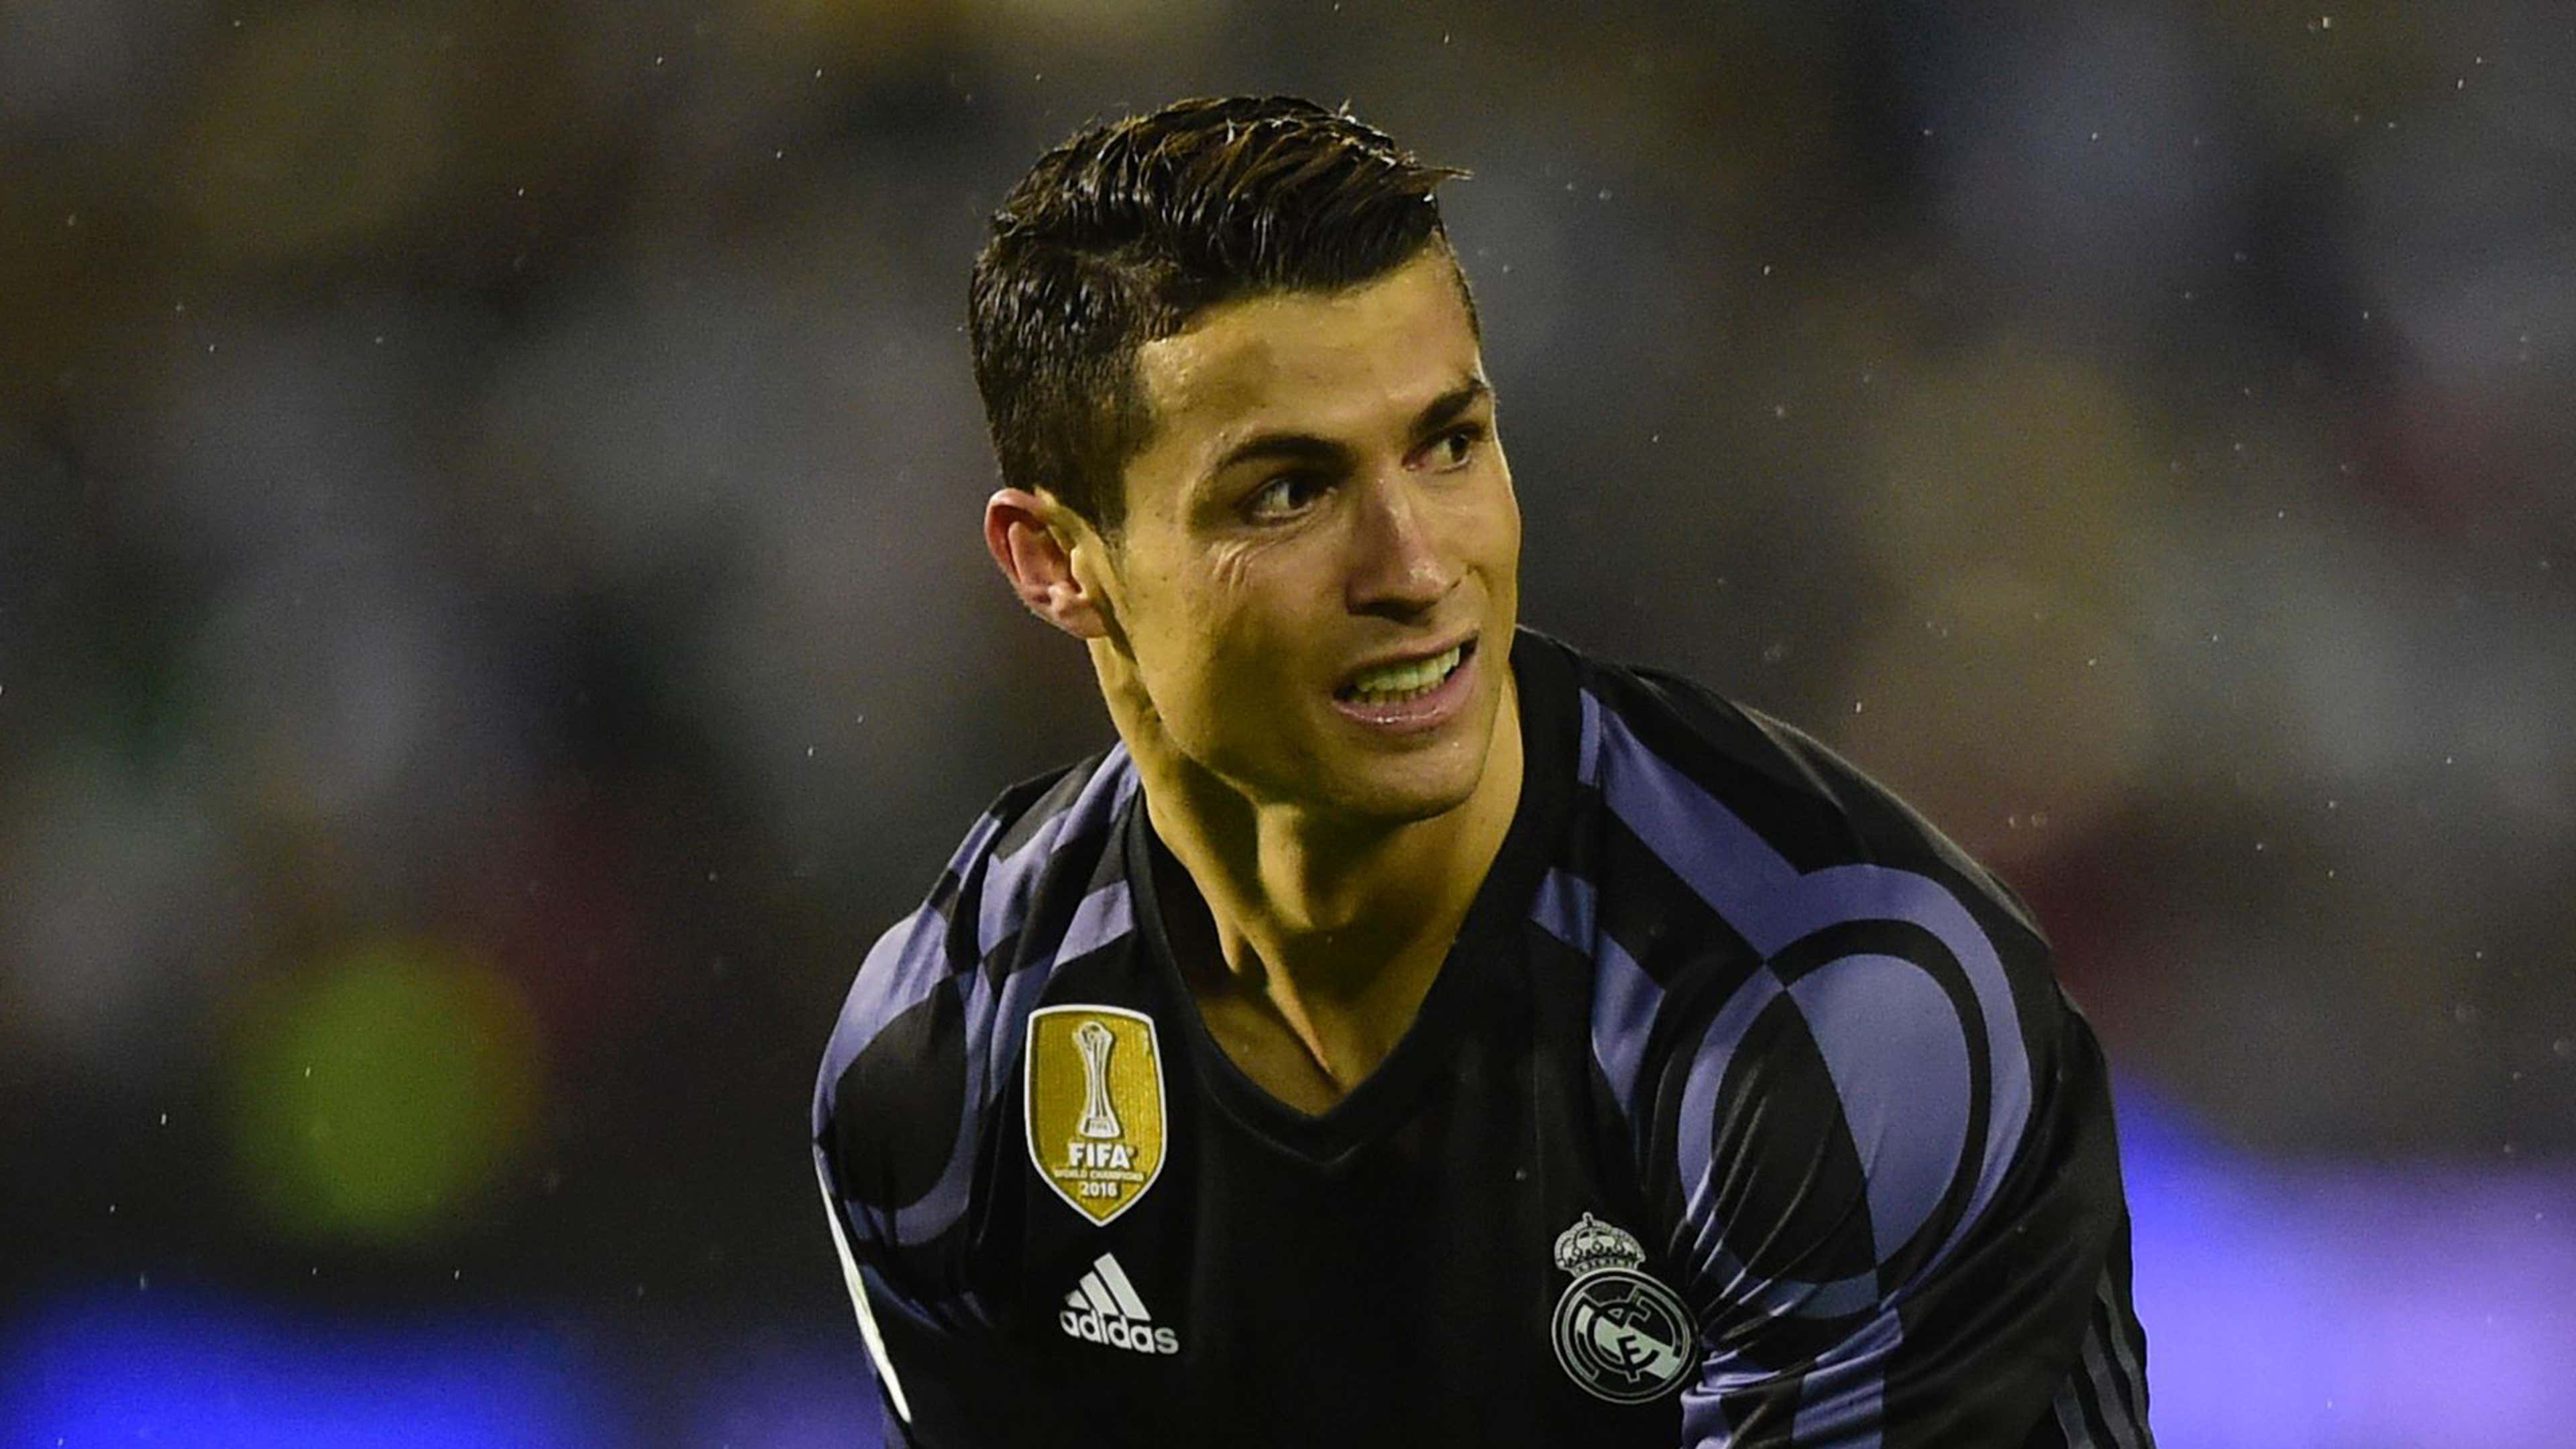 Não existe ninguém melhor que eu', diz Cristiano Ronaldo